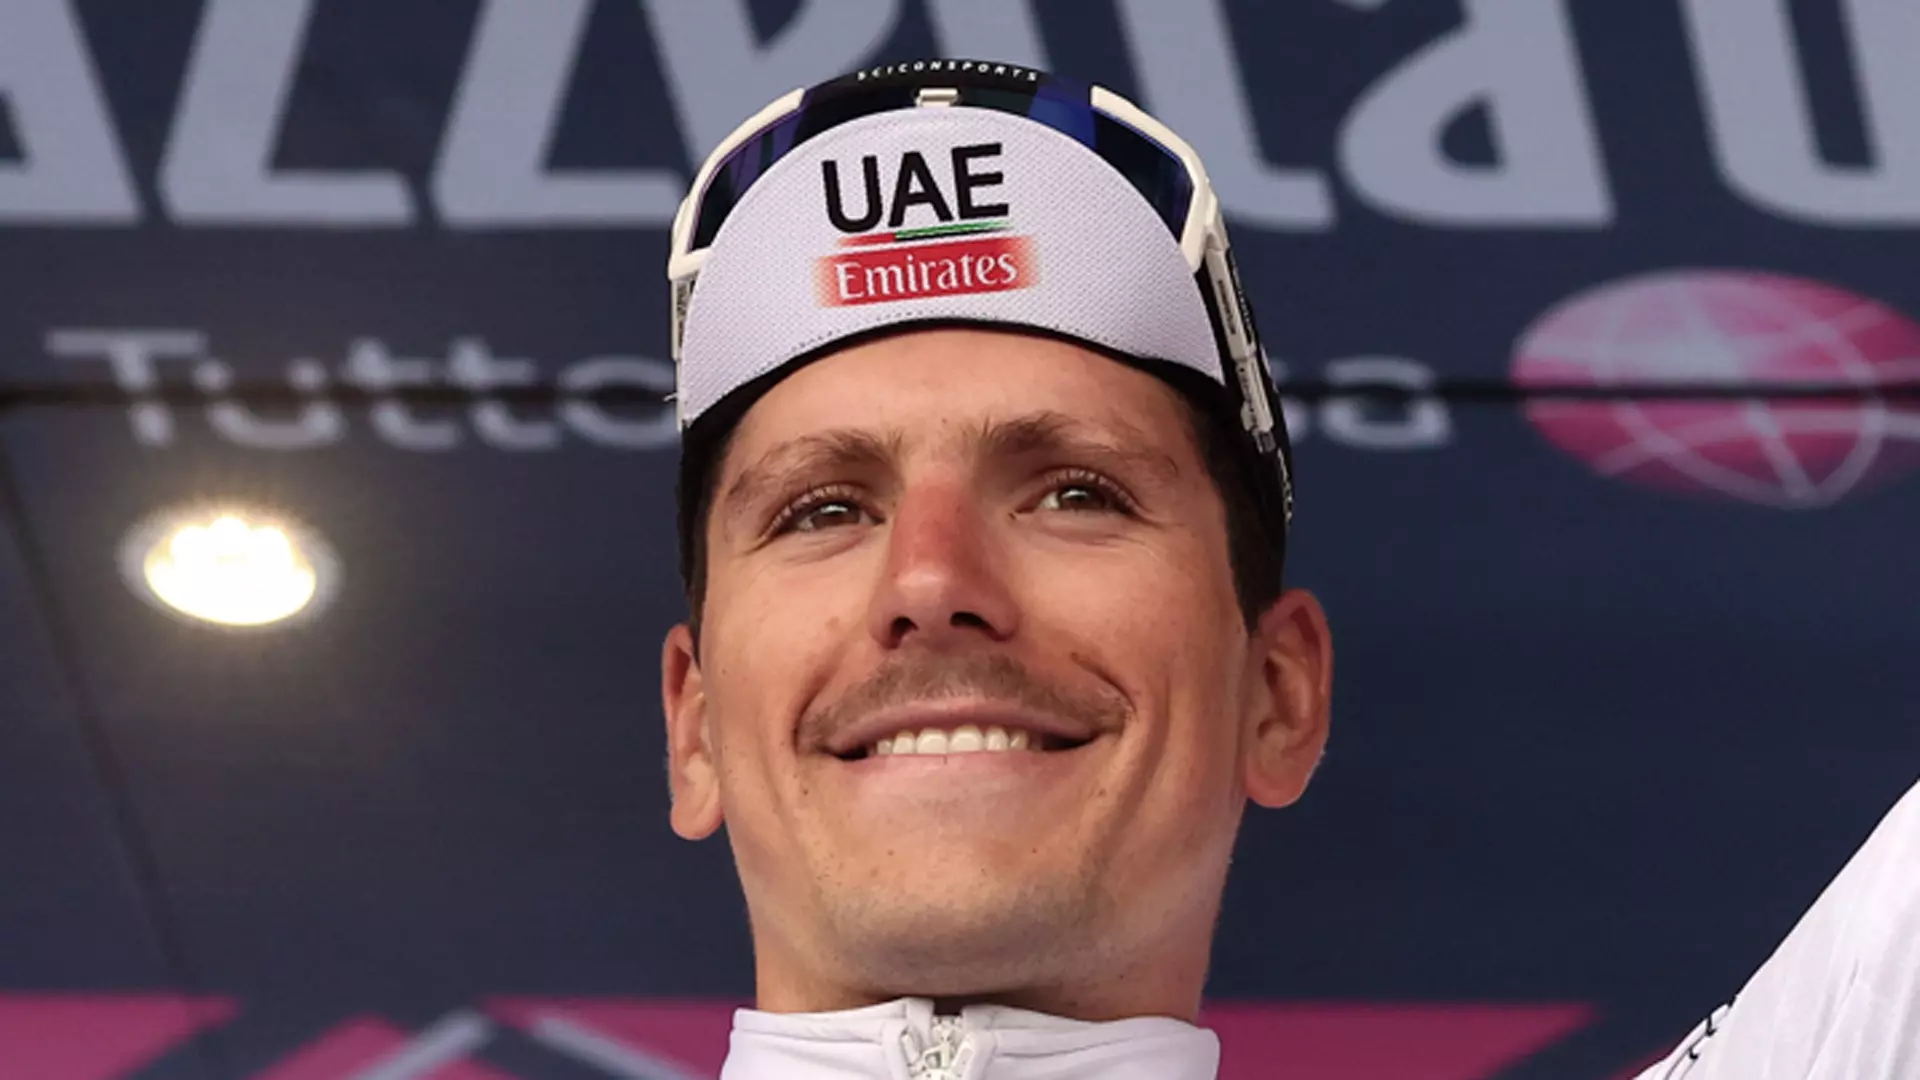 Joao Almeida vuole tutto: “Posso vincere il Giro d’Italia”